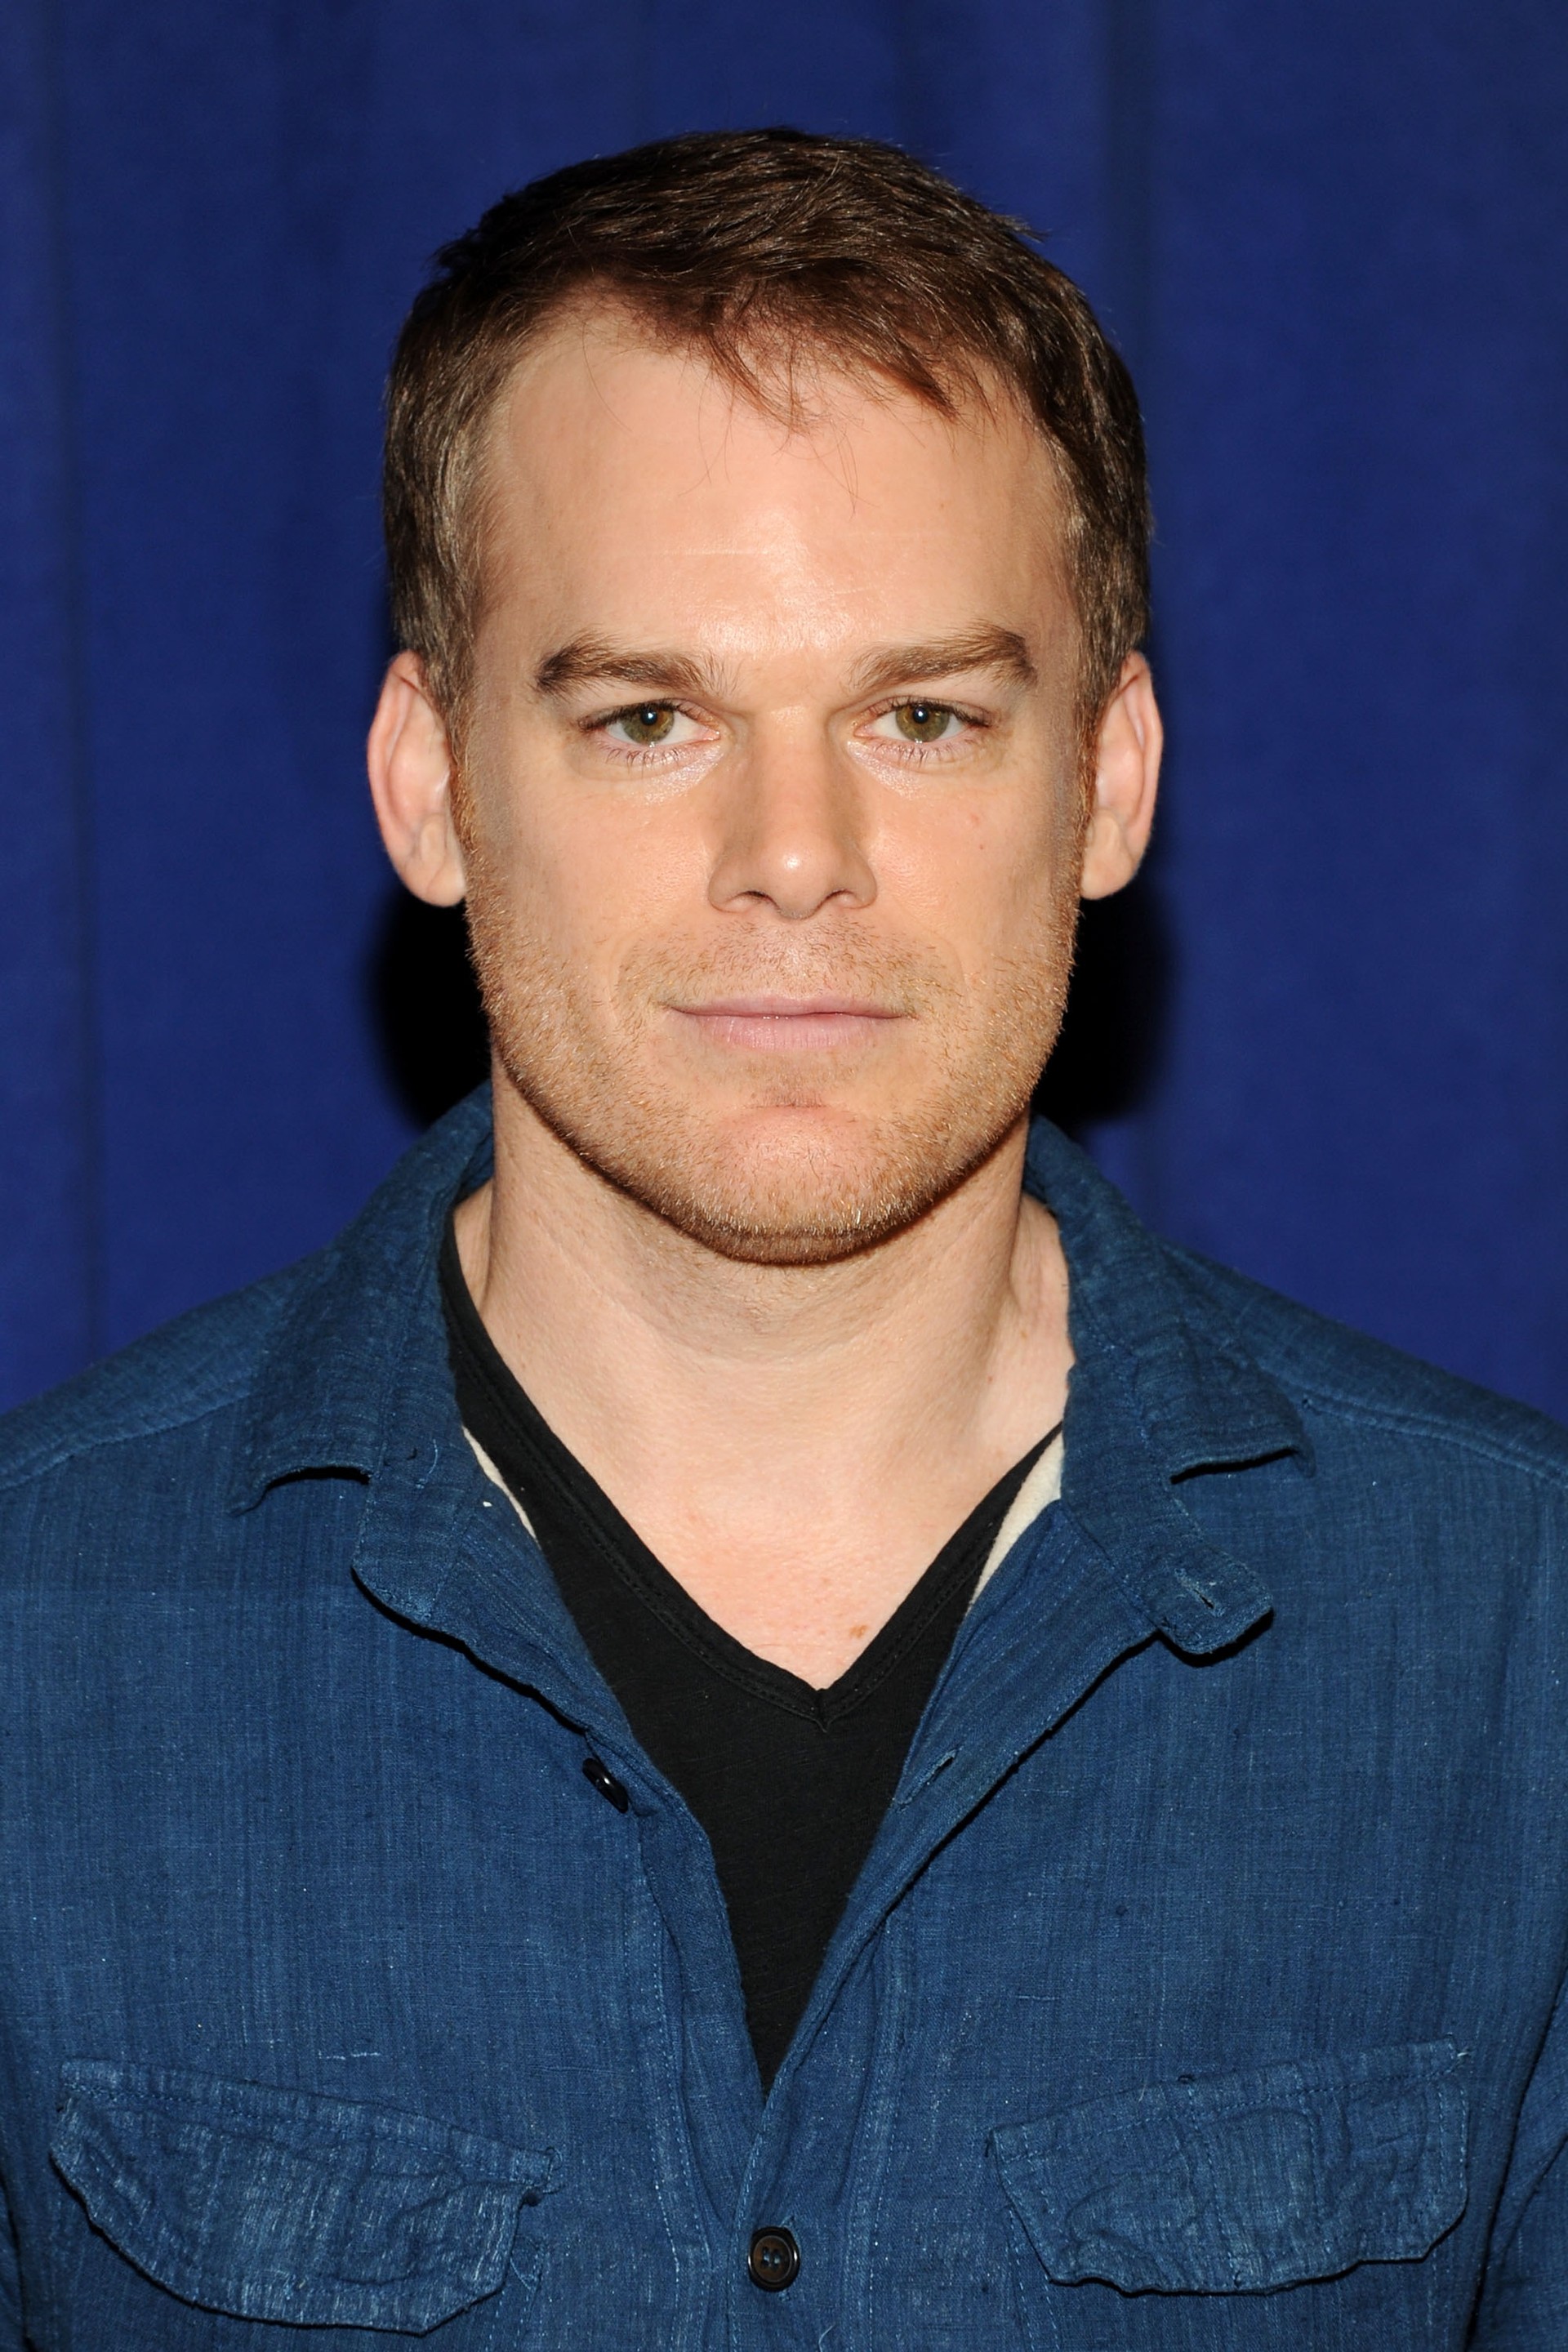 Michael, conhecido pelo seu papel de serial killer na série ‘Dexter’, foi diagnosticado e superou um linfoma de Hodgkin. (Foto: Getty Images)